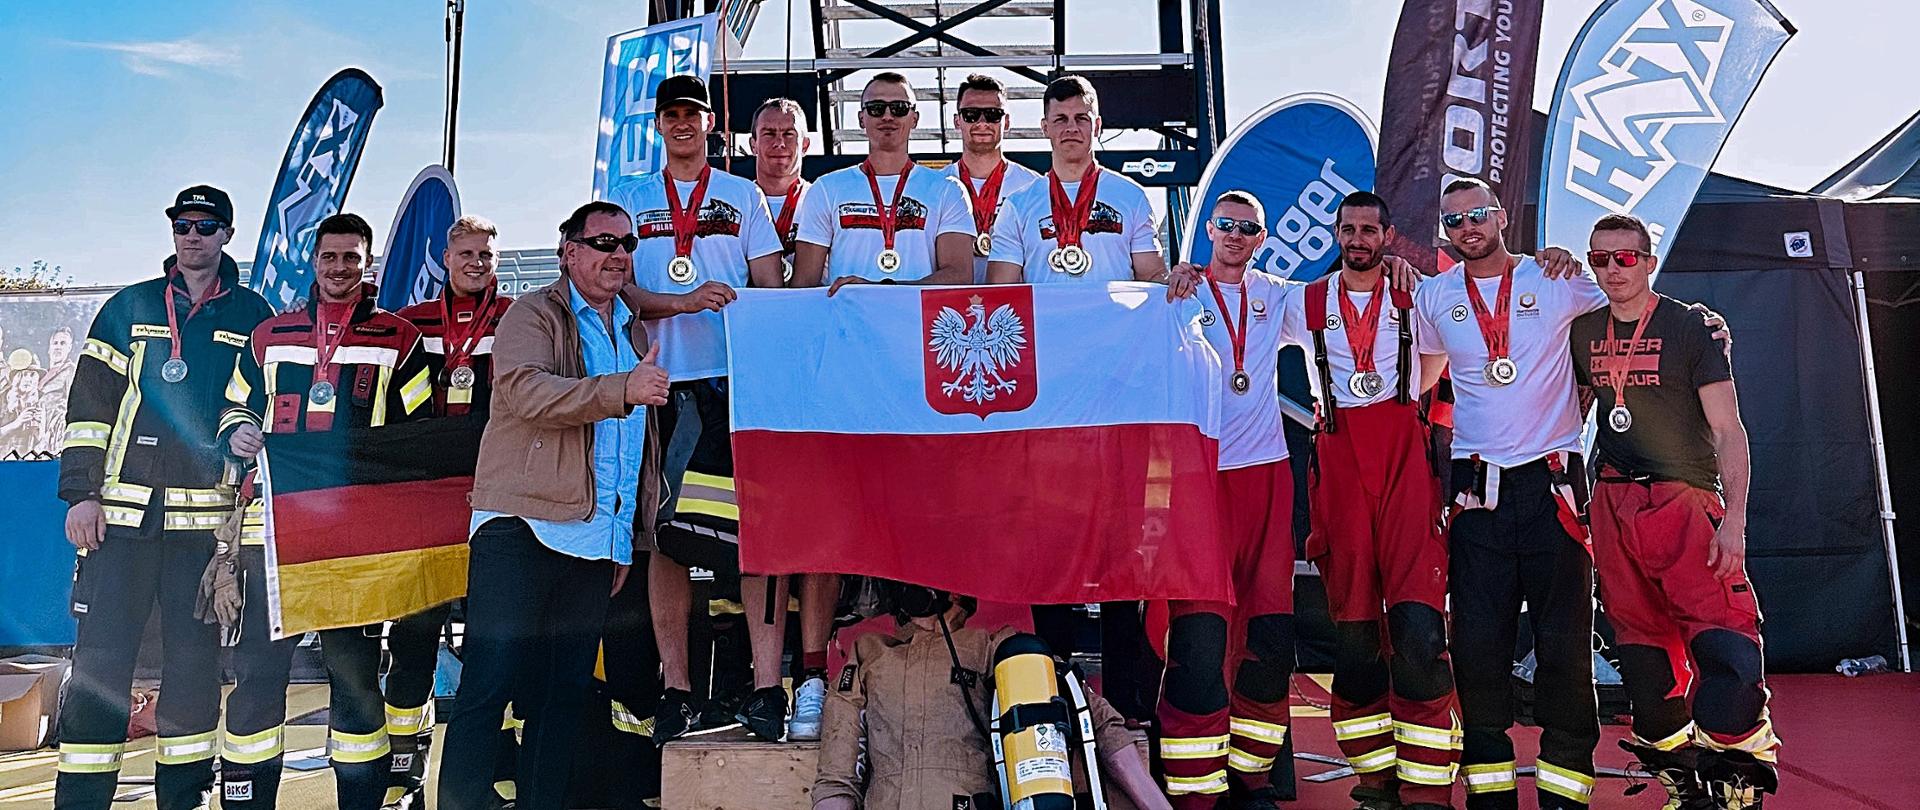 Podium na którym widoczne są reprezentacje strażaków z Polski i Niemiec. Polskie drużyny stoją na najwyższym i drugim miejscu podium, trzecie miejsce zajmuje drużyna niemiecka. Reprezentacje drużyn prezentują przed sobą flagi narodowe. W tle widoczna jest wspinalnia oraz banery reklamowe sponsorów. 